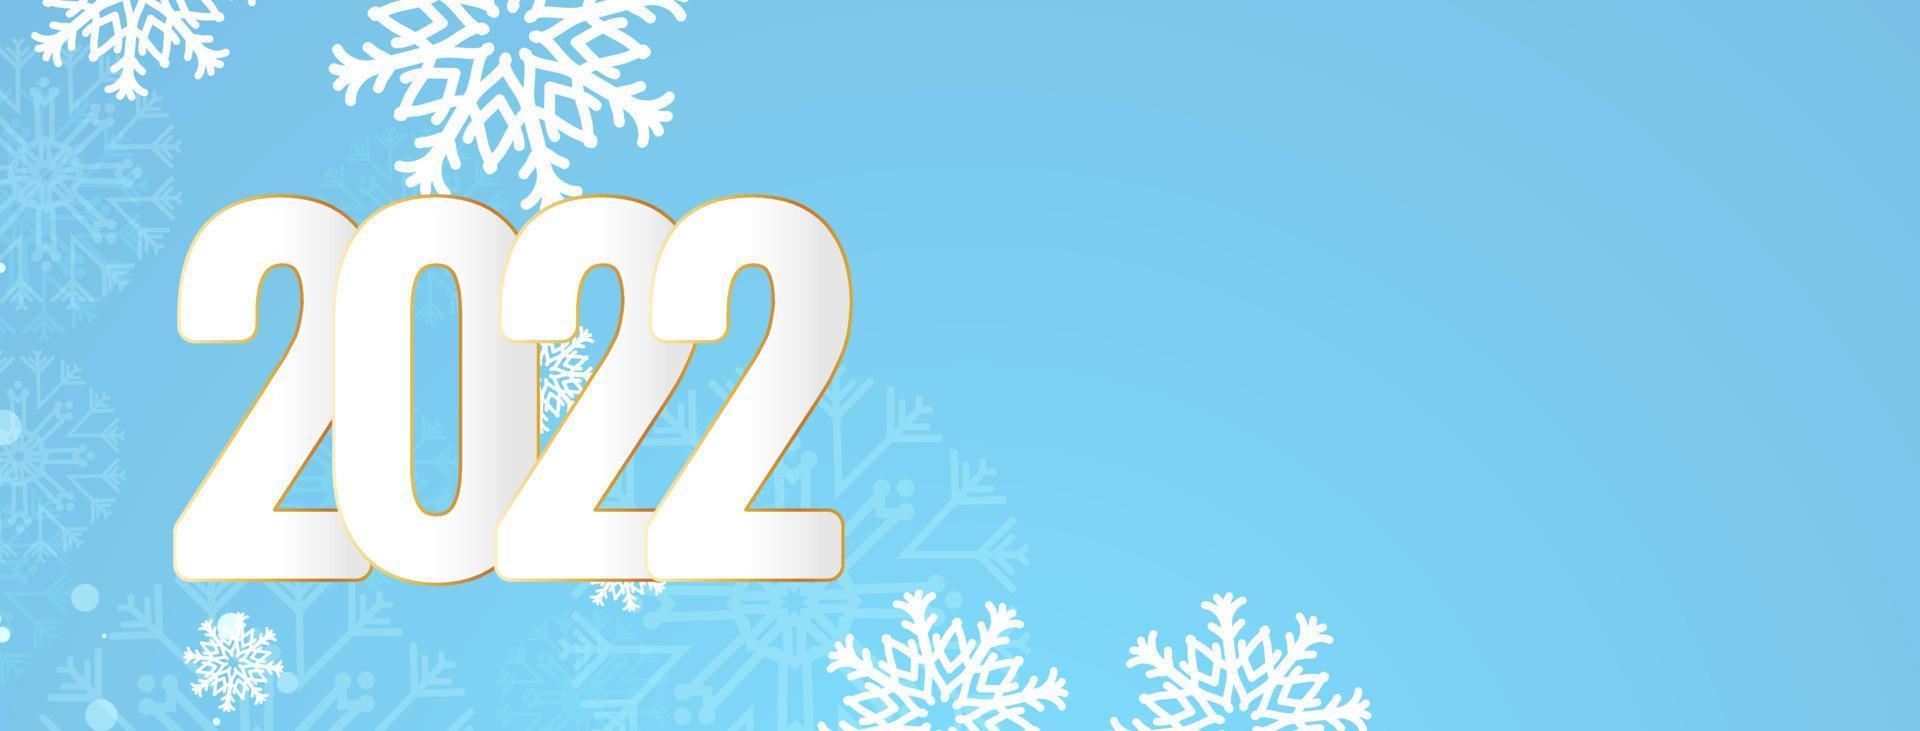 felice anno nuovo 2022 design morbido banner blu vettore